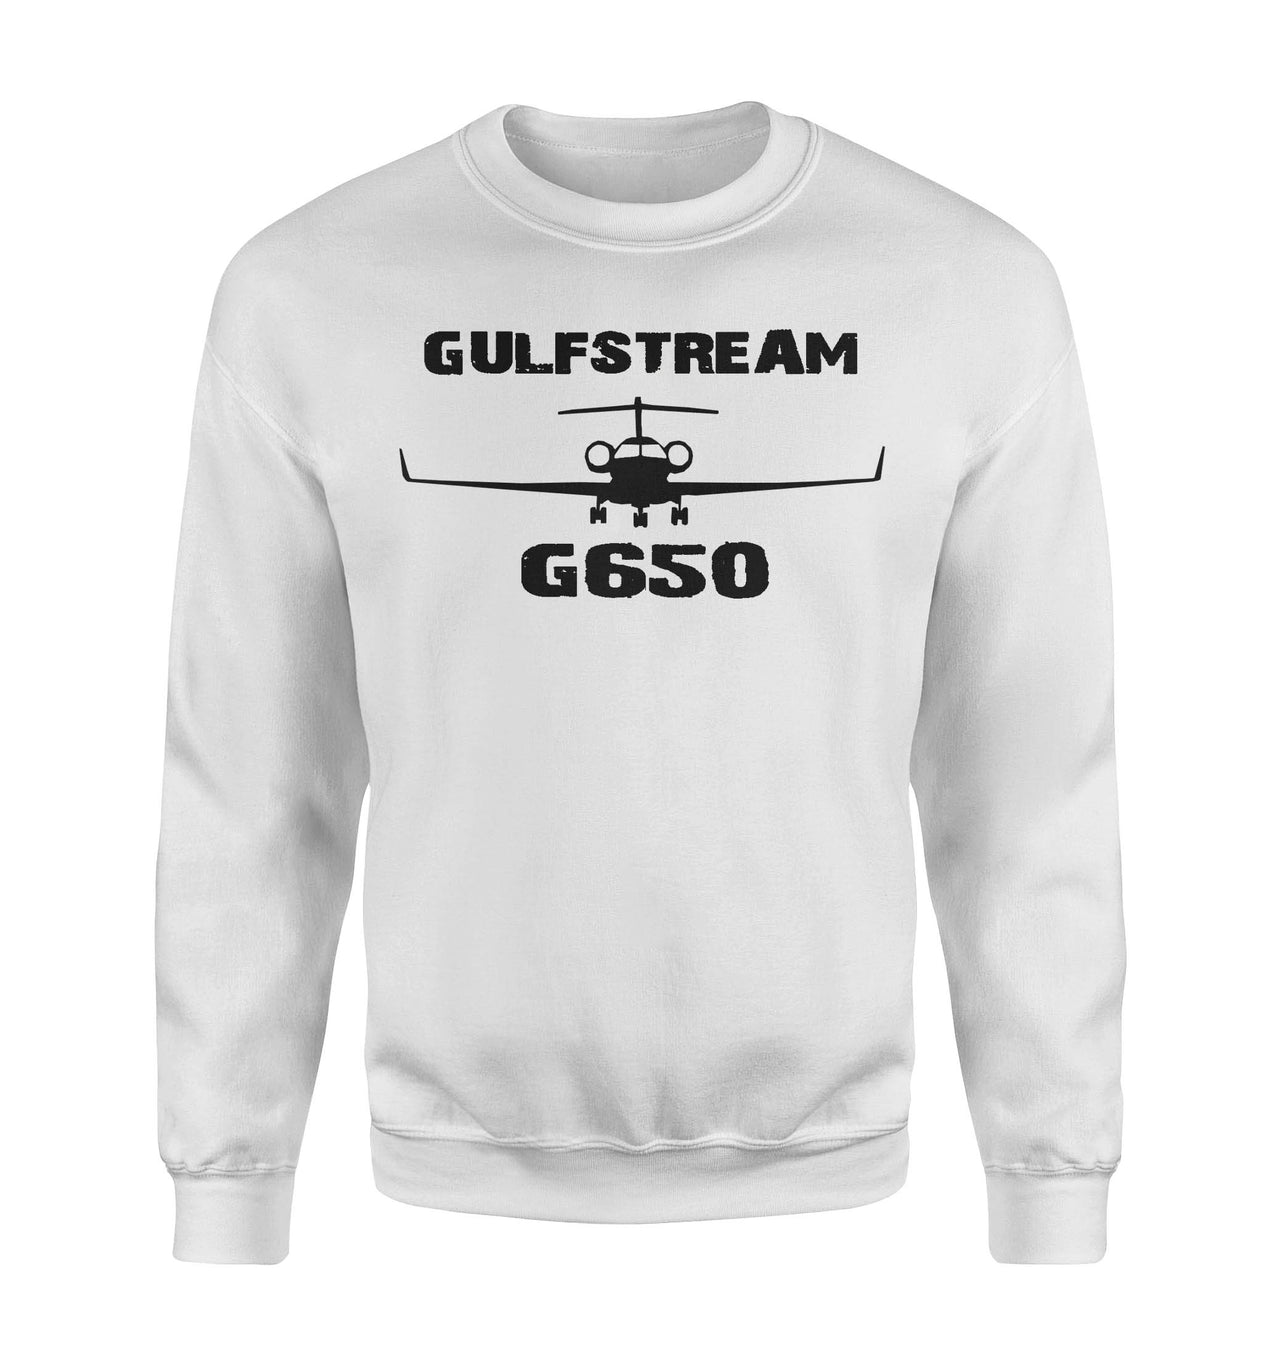 Gulfstream G650 & Plane Designed Sweatshirts